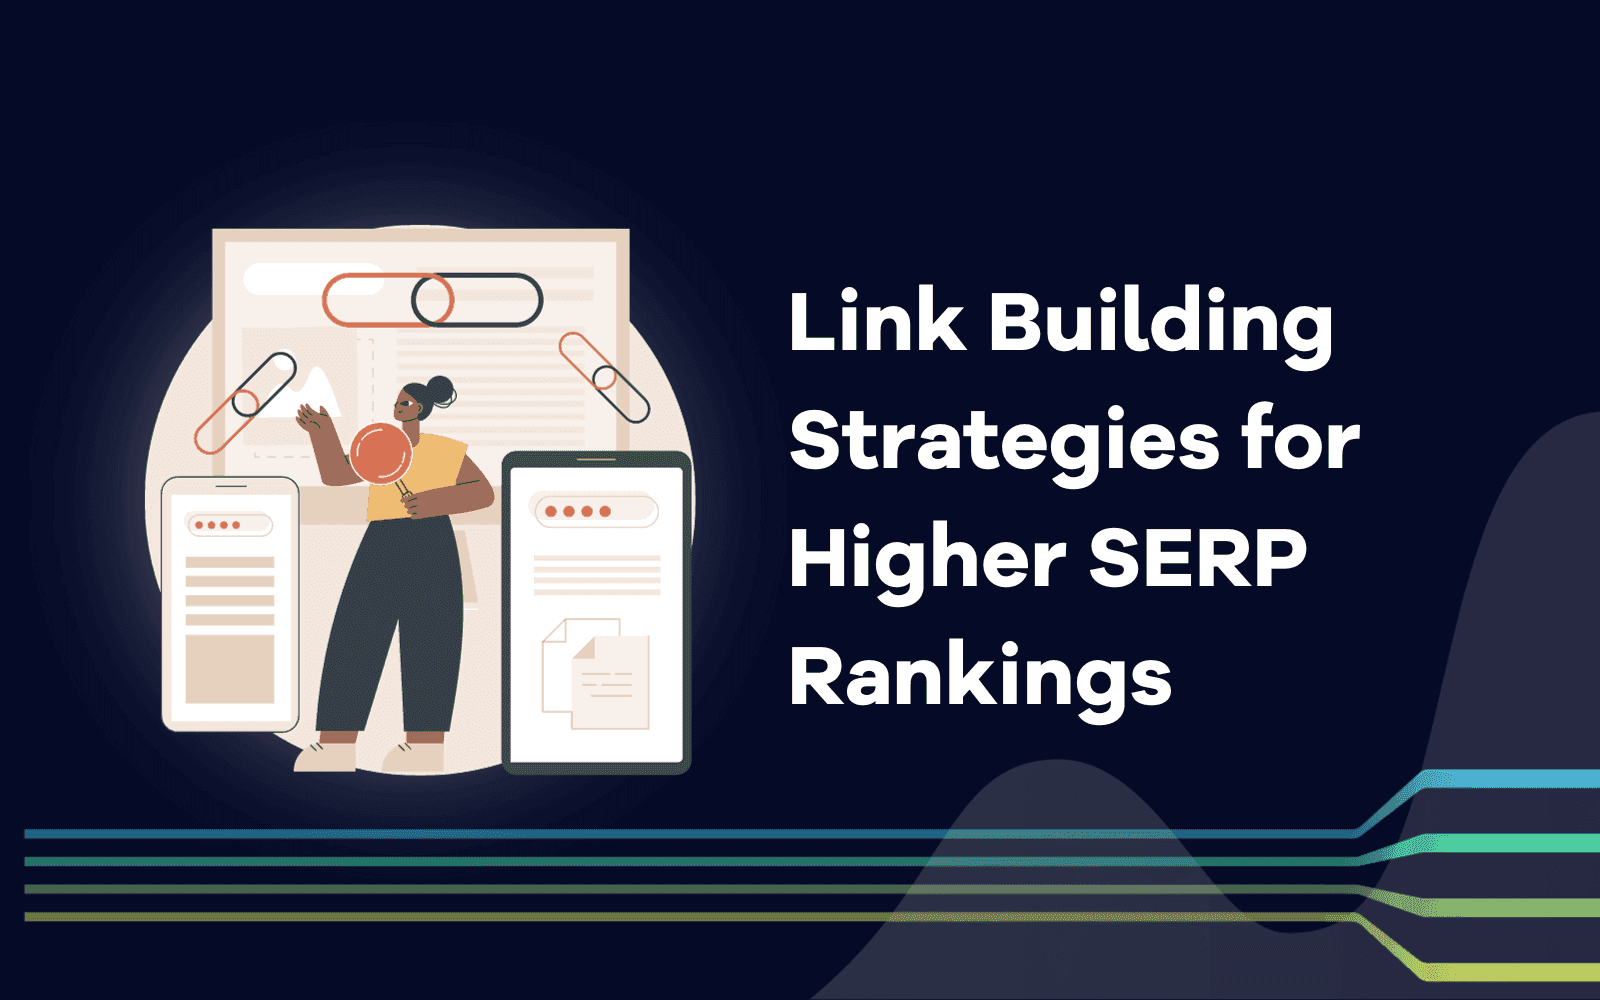 Hot or Not? 7 nowych strategii budowania linków dla wyższych rankingów SERP